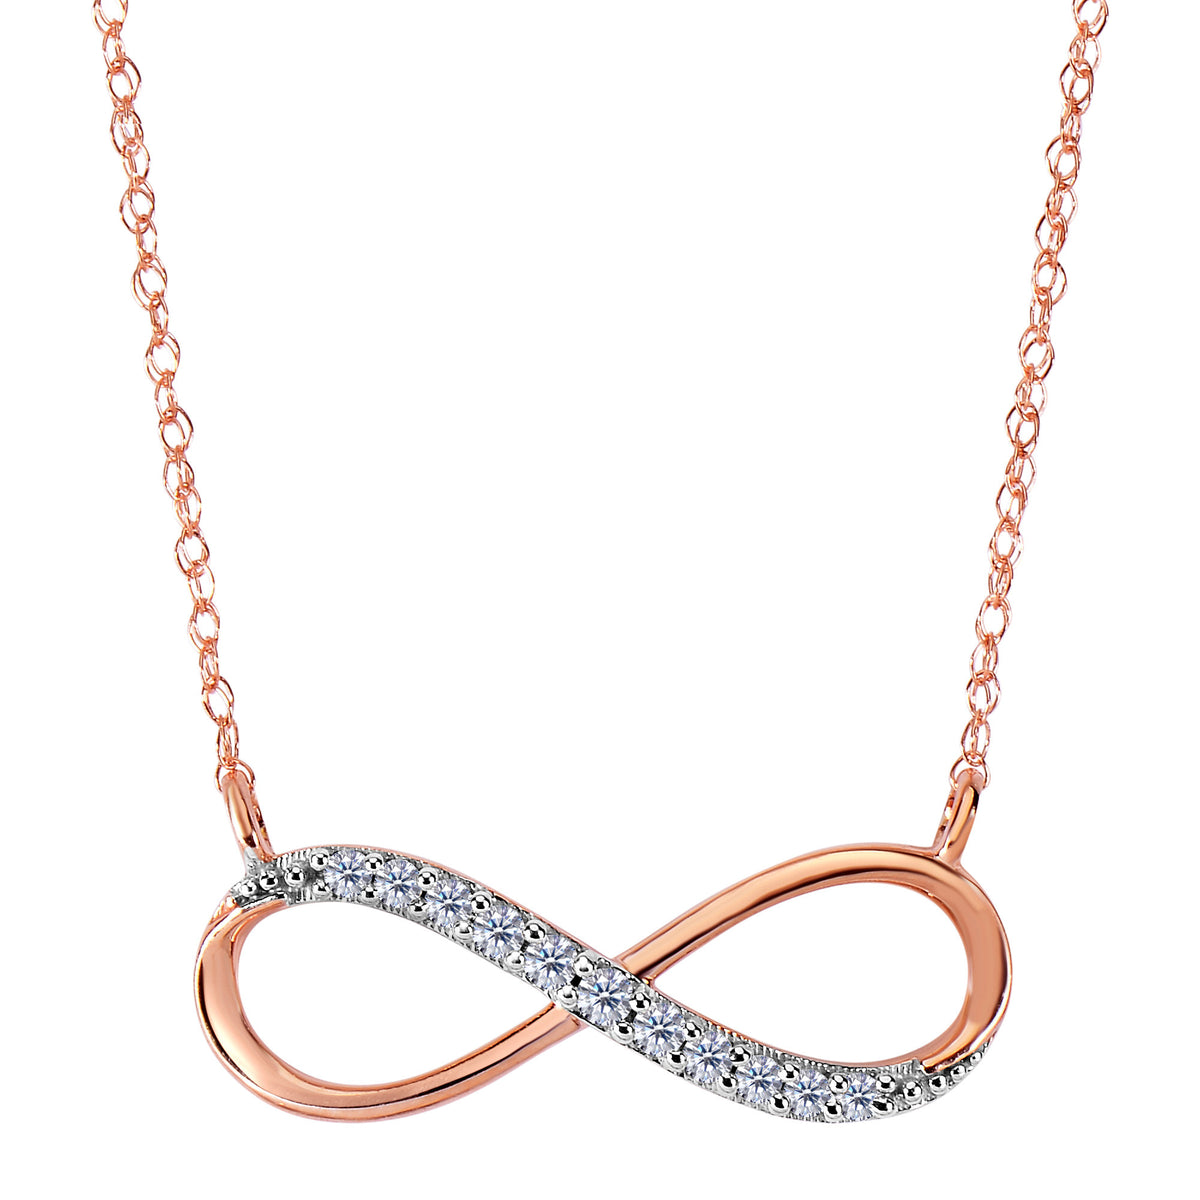 Collar infinito de oro rosa de 14 quilates con diamantes de 0,10 quilates: joyería fina de diseño de 18 pulgadas para hombres y mujeres